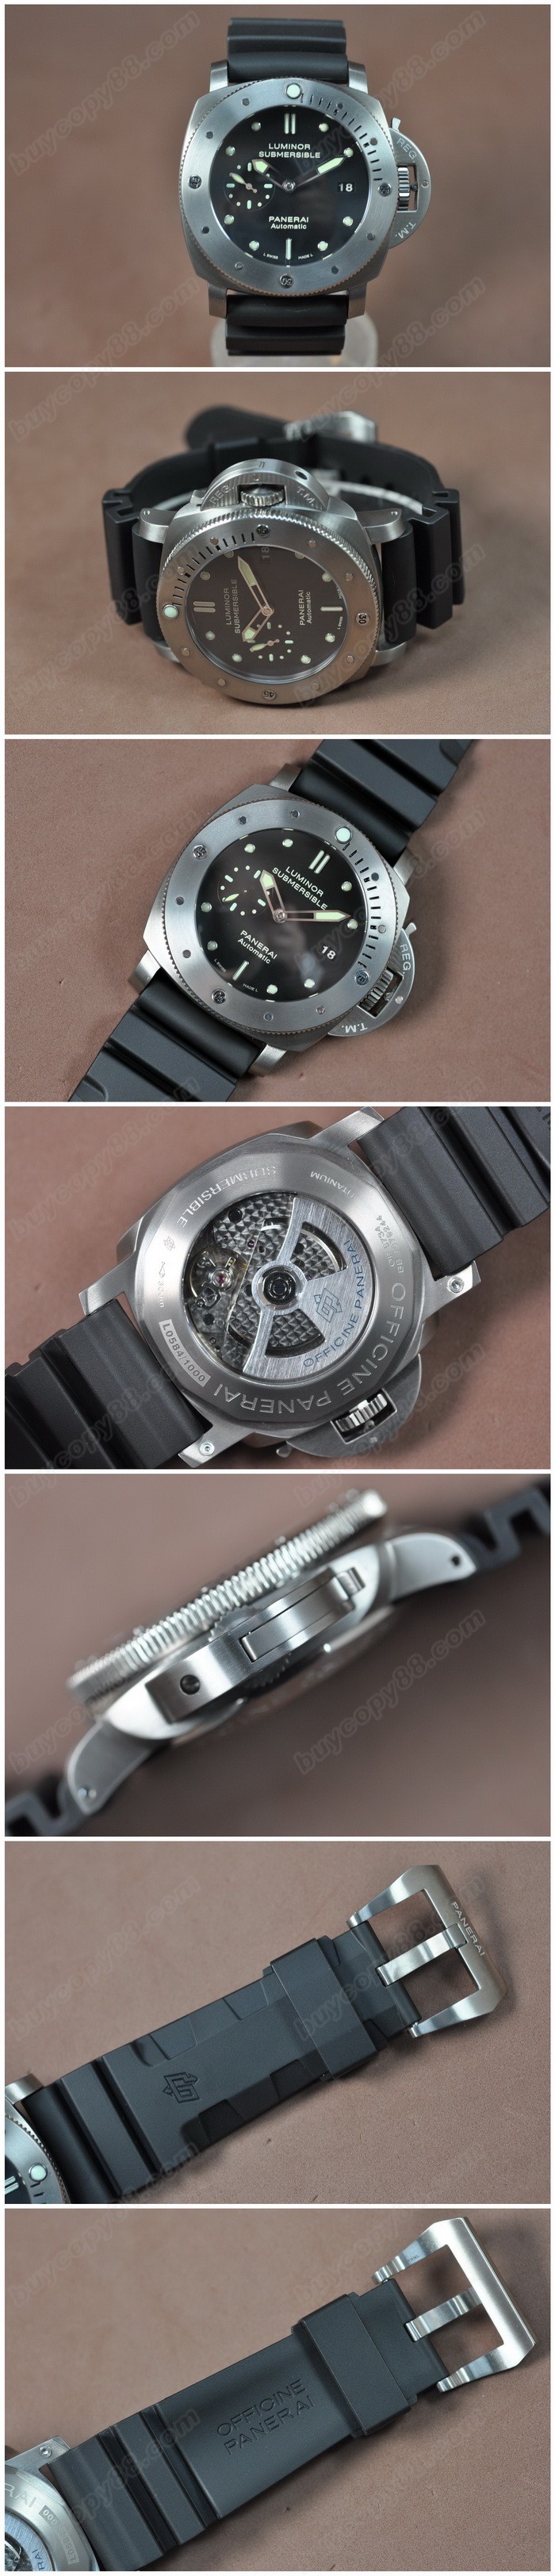 沛納海 Watches Submessible 47mm Ti/RU 黑 文字盤 A-7750 自動機芯 搭 載 0